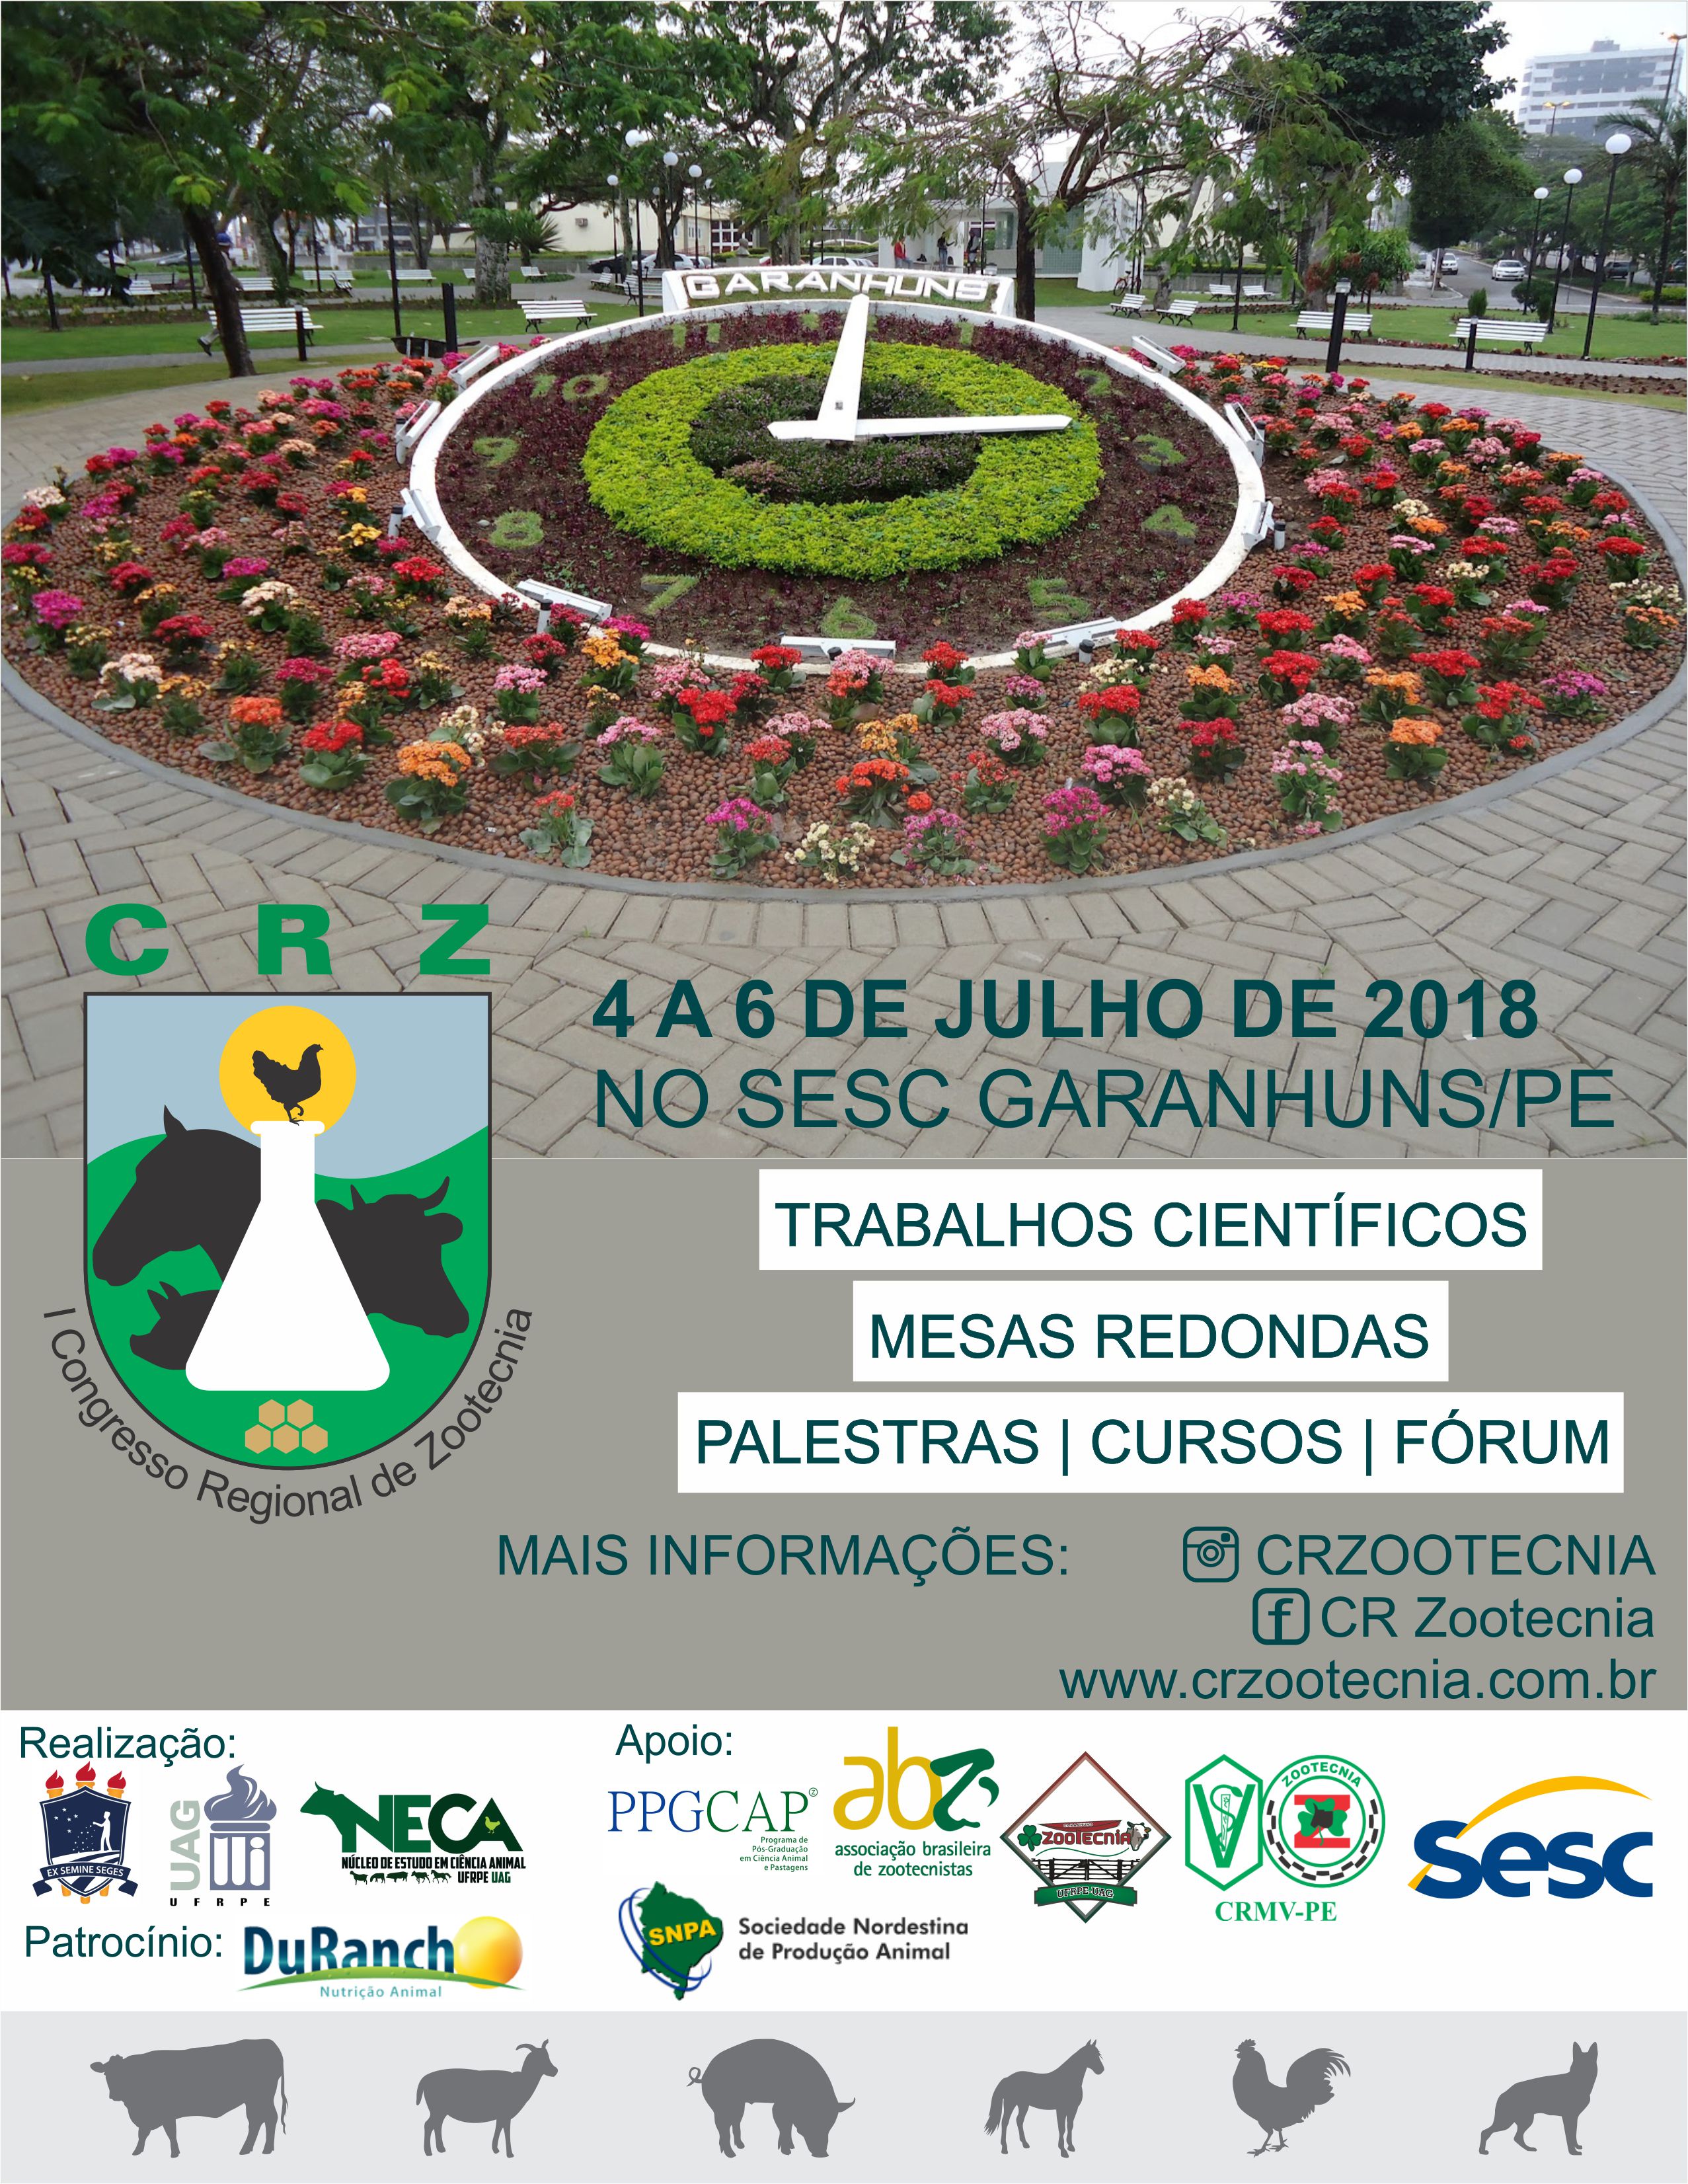 Cartaz com informações do Congresso Regional de Zootecnia